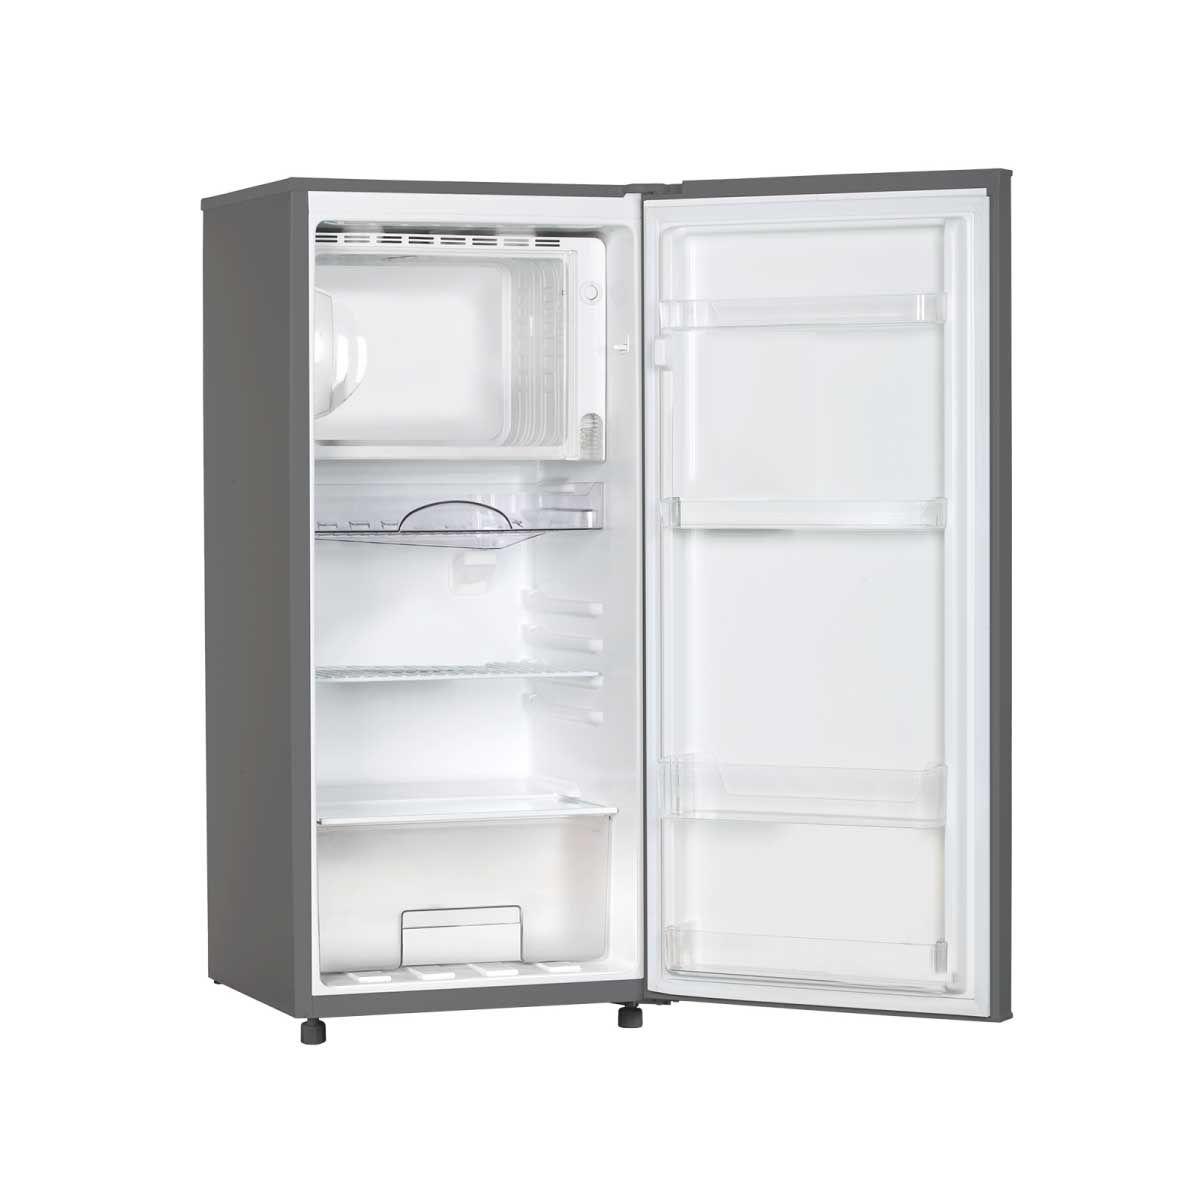 ACONATIC  ตู้เย็น 1 ประตู 6.2Q สี Dark Gray  รุ่น AN-FR1750